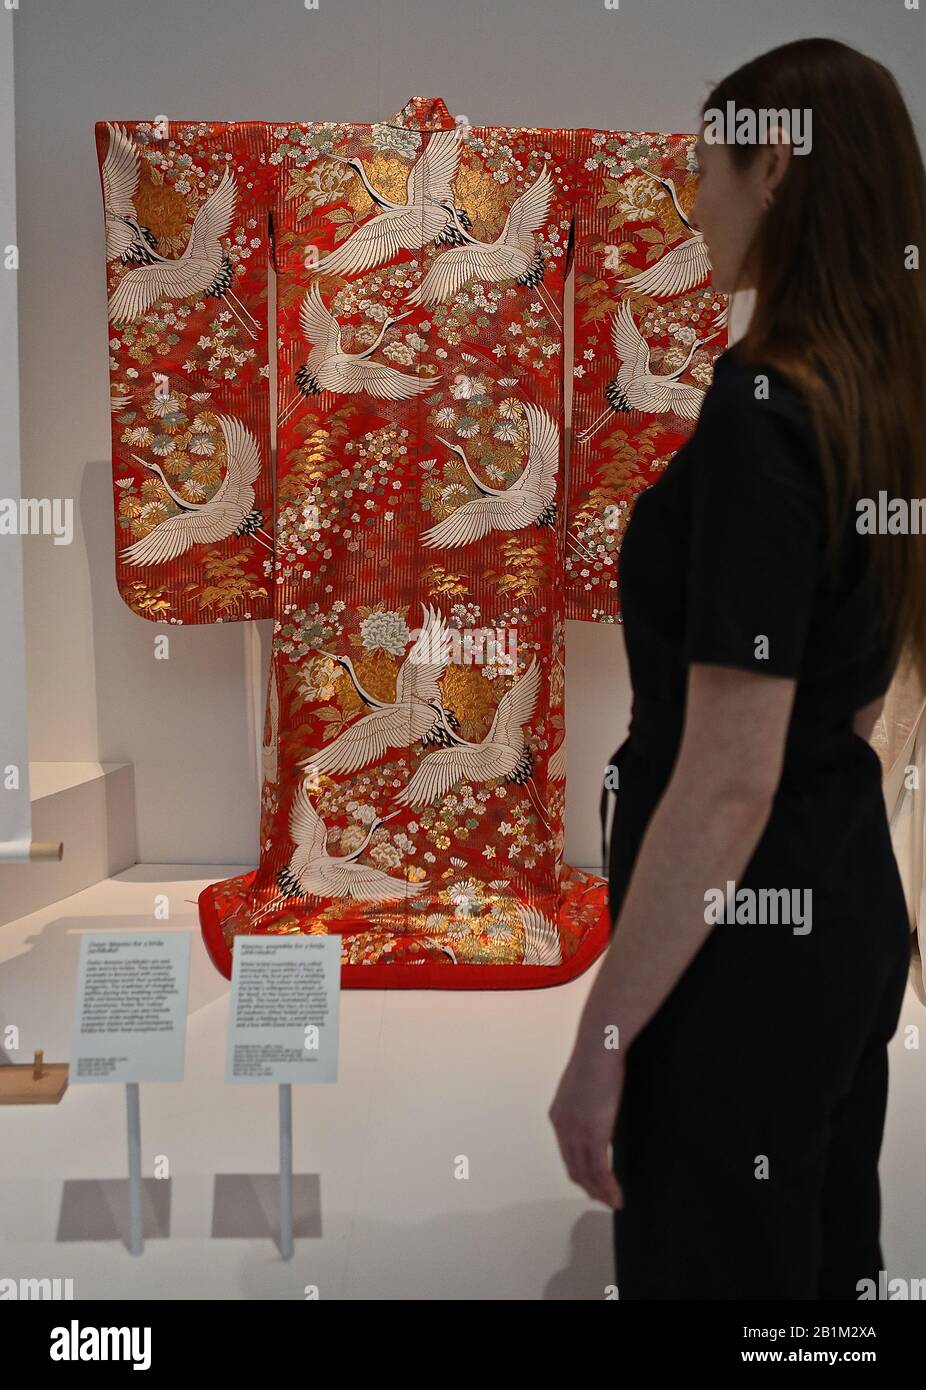 La primera gran exposición europea sobre kimono con prendas de vestir Madonna, Freddie Mercury y David Bowie, la exposición incluye por vez un raro kimono de los siglos 17 y